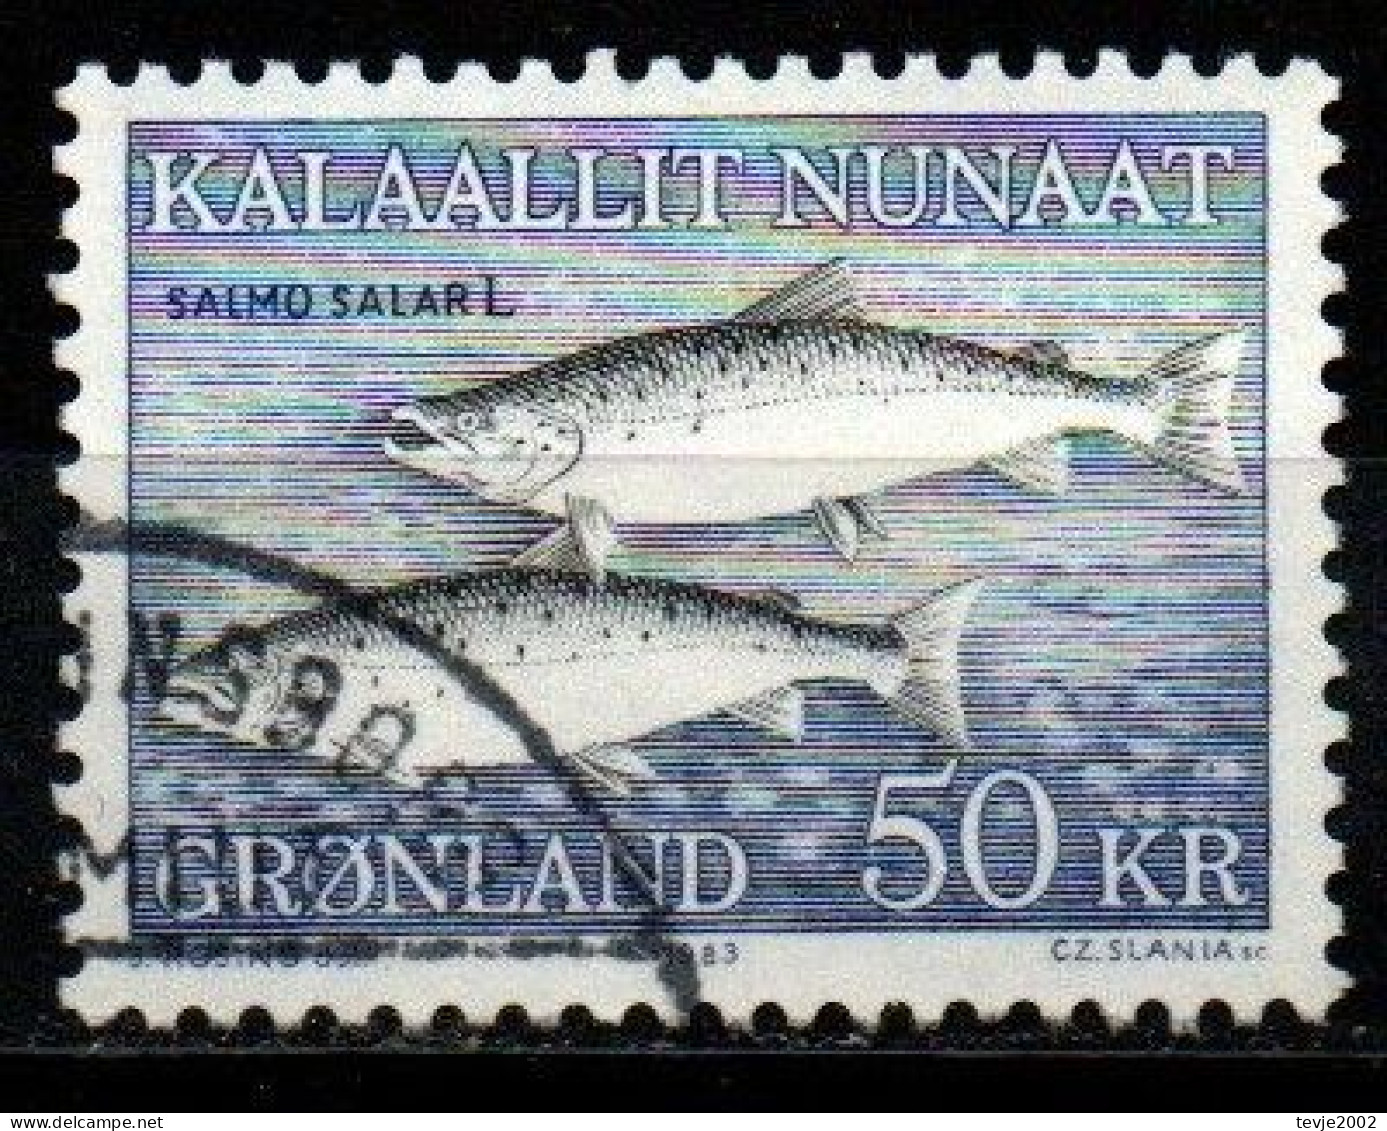 Grönland 1983 - Mi.Nr. 140 - Gestempelt Used - Tiere Animals Fische Fishes - Used Stamps